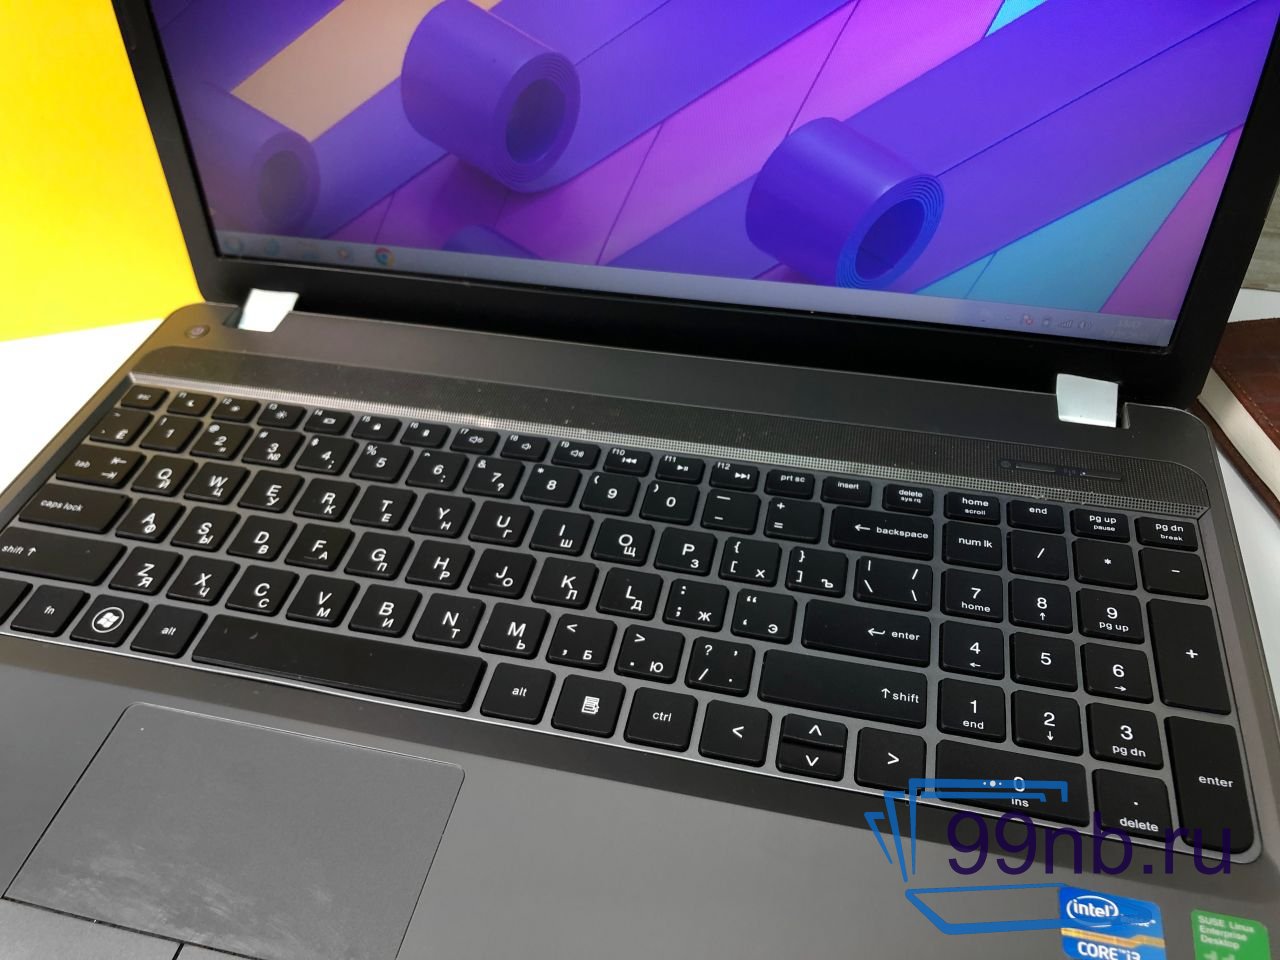  Ноутбук HP Probook для офиса